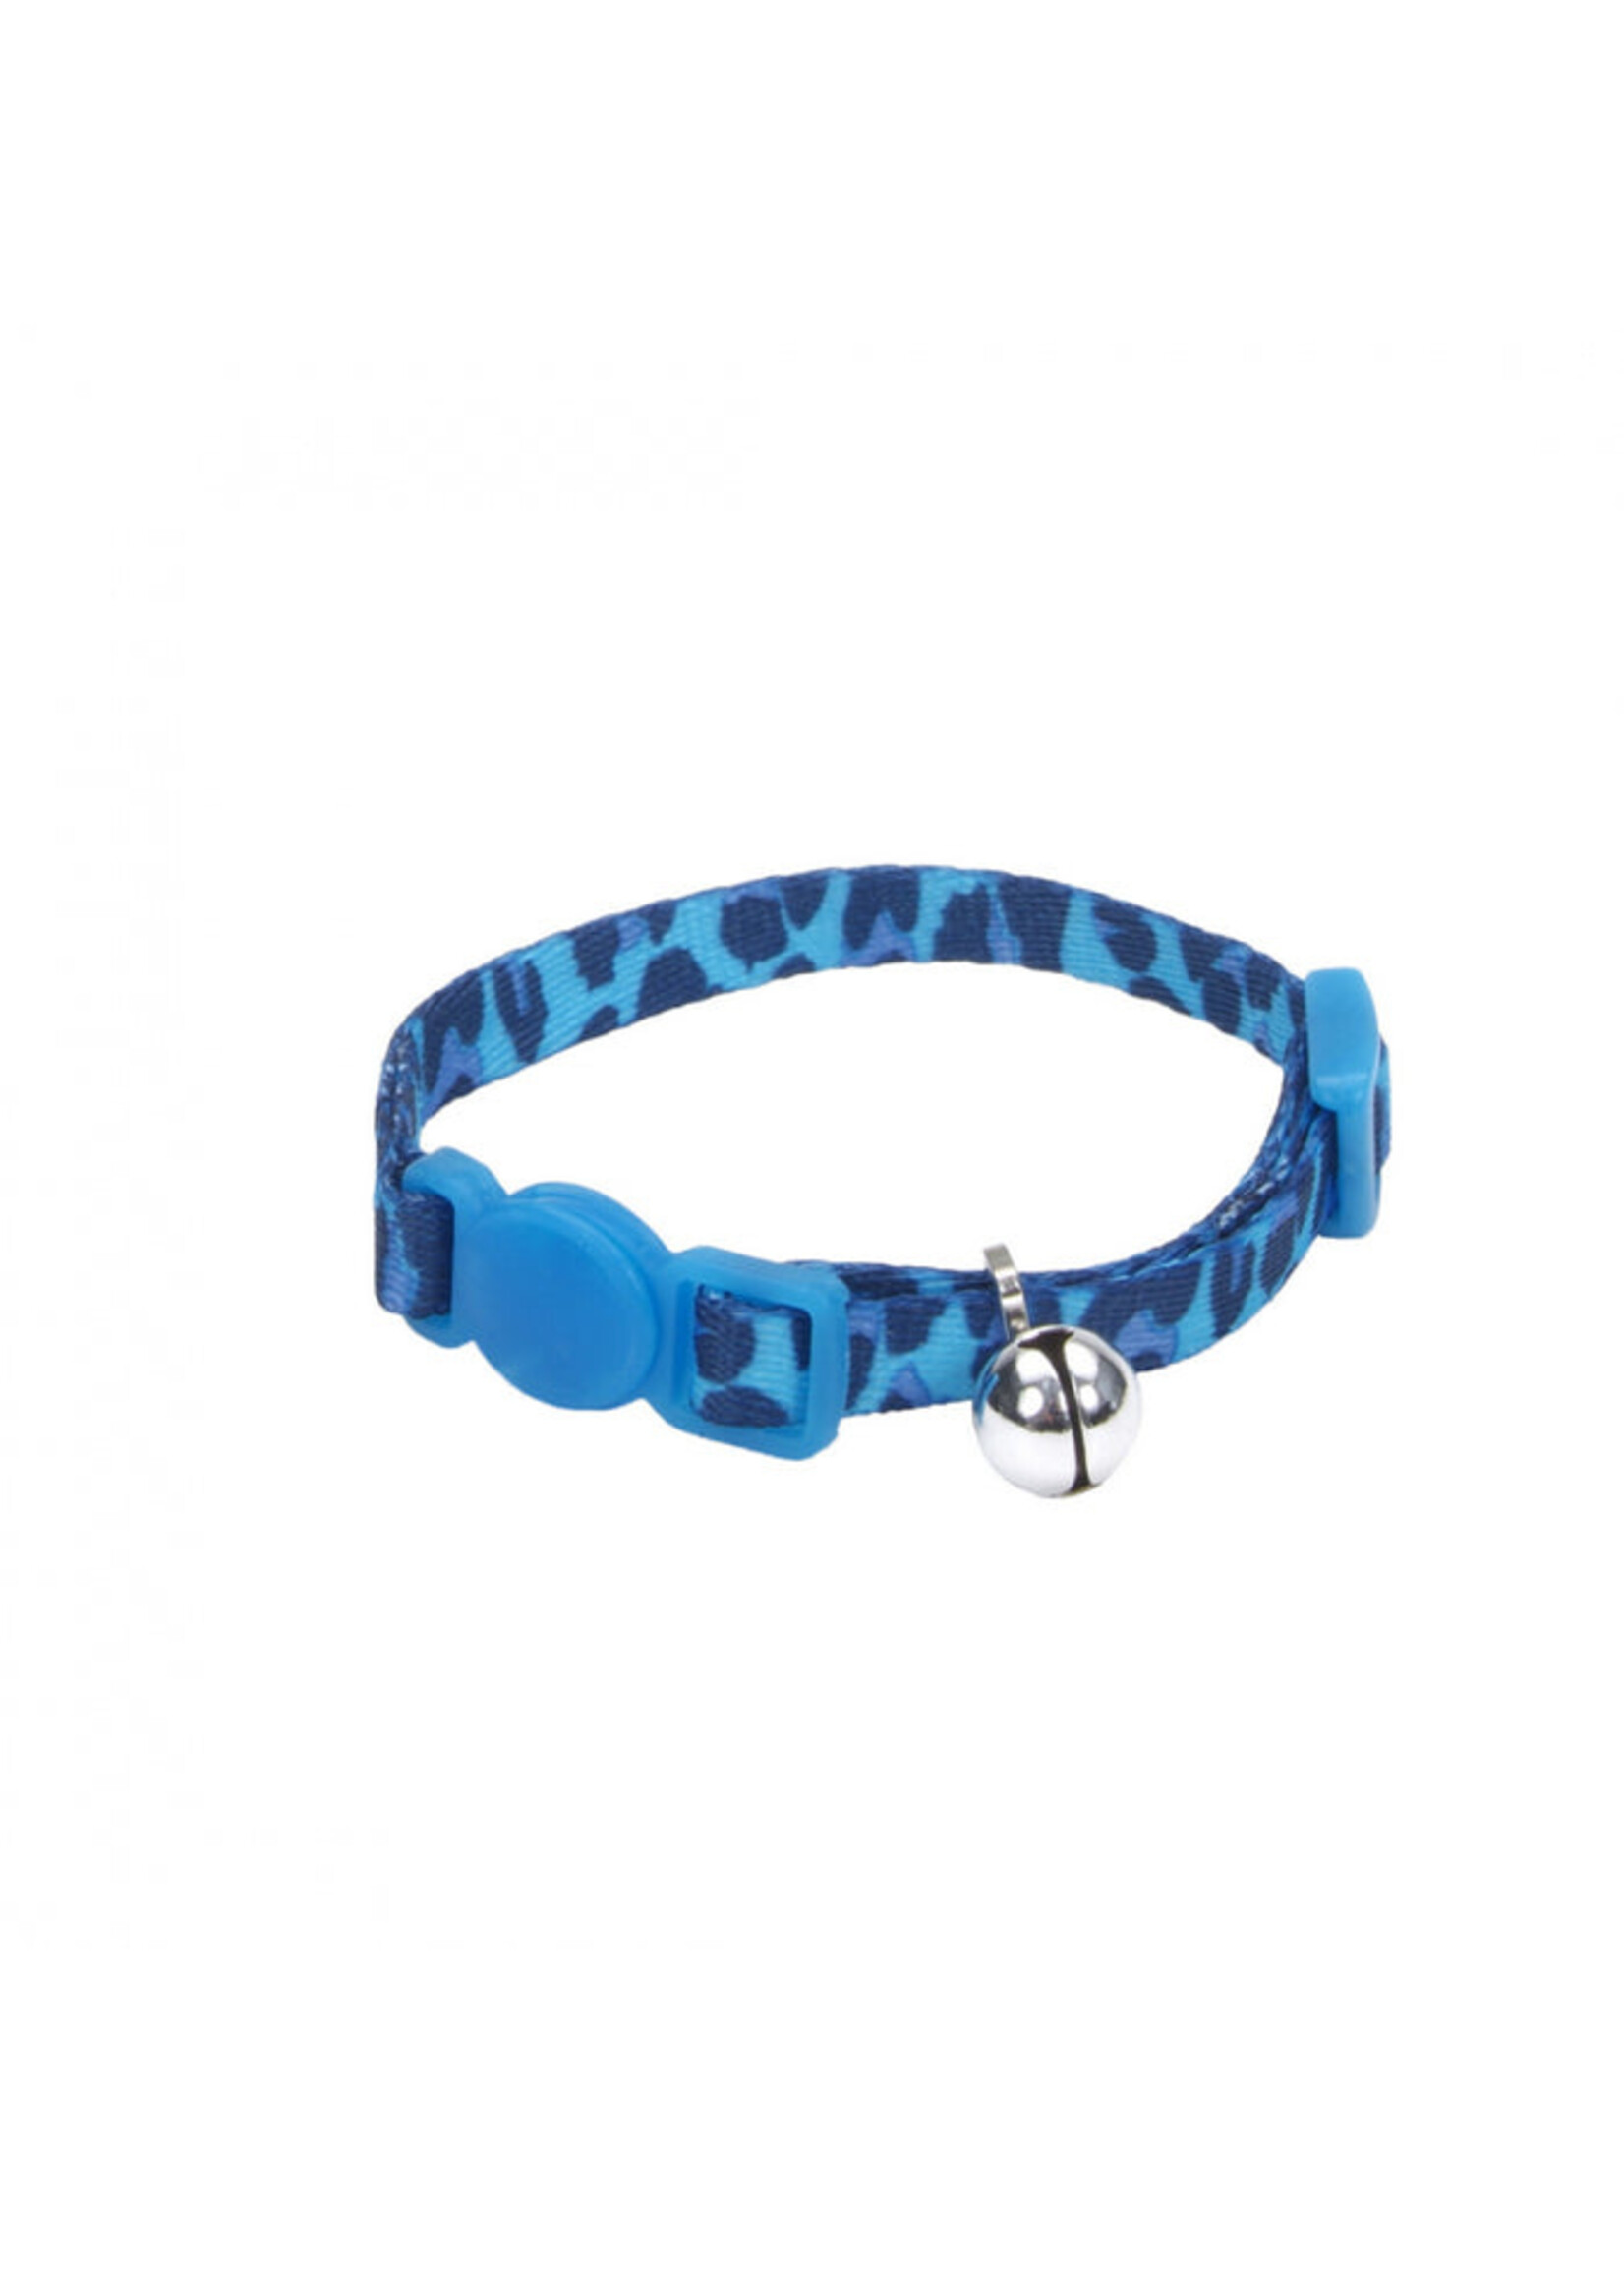 Coastal Pet Products Inc. Coastal Li'l Pals Kitten Adjustable Breakaway Collar 5/16" x 6-8"